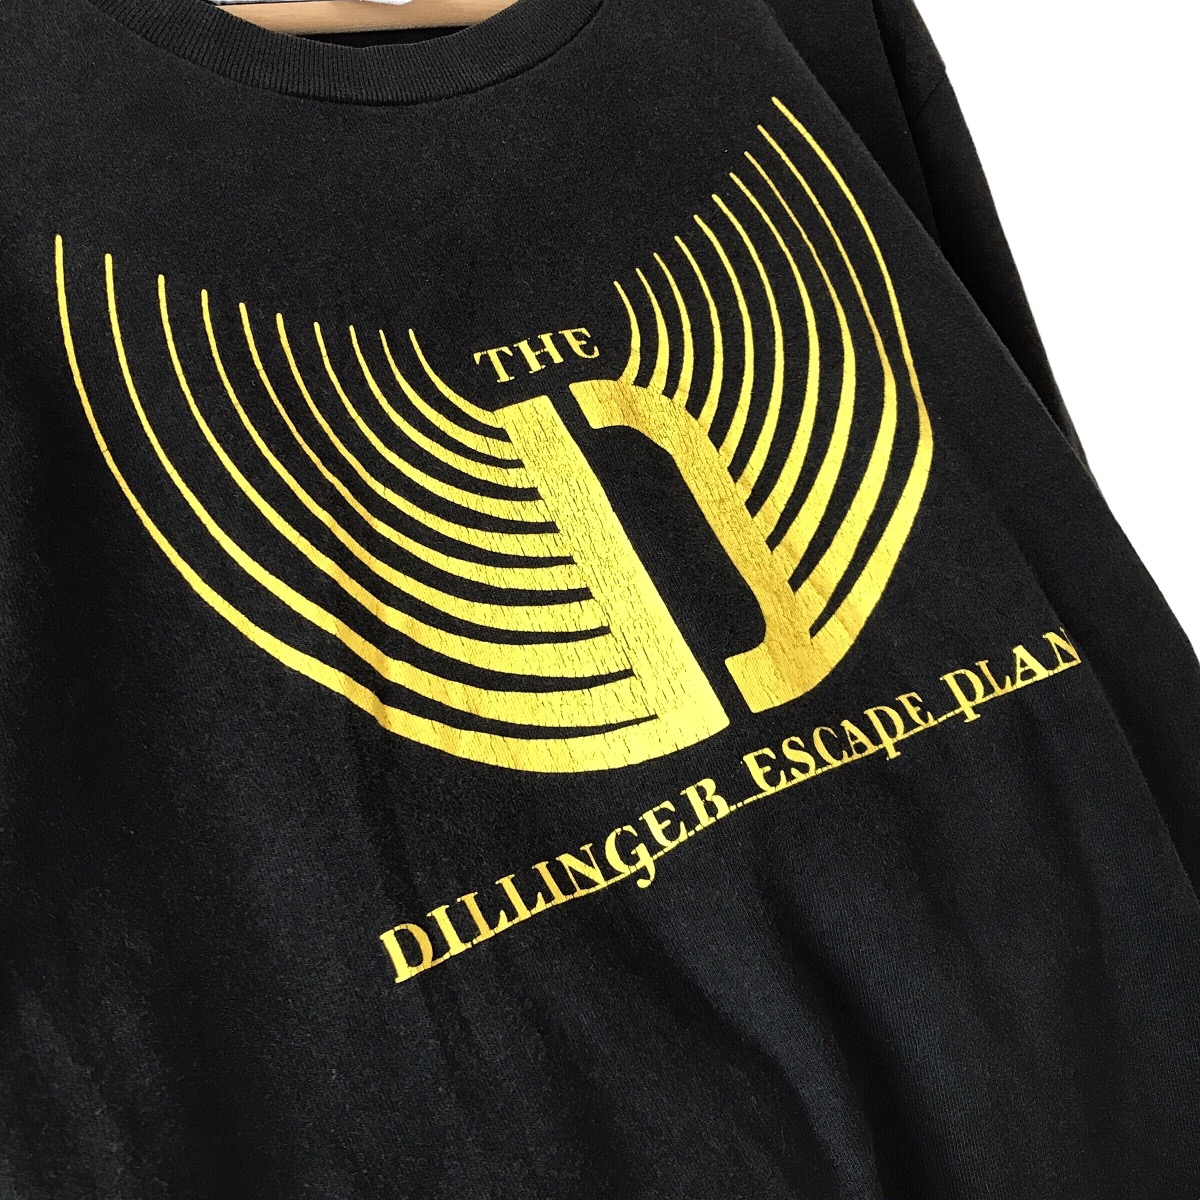 Rock Band - Dillinger Escape Plan USA Band Logo Promo Tee - 4